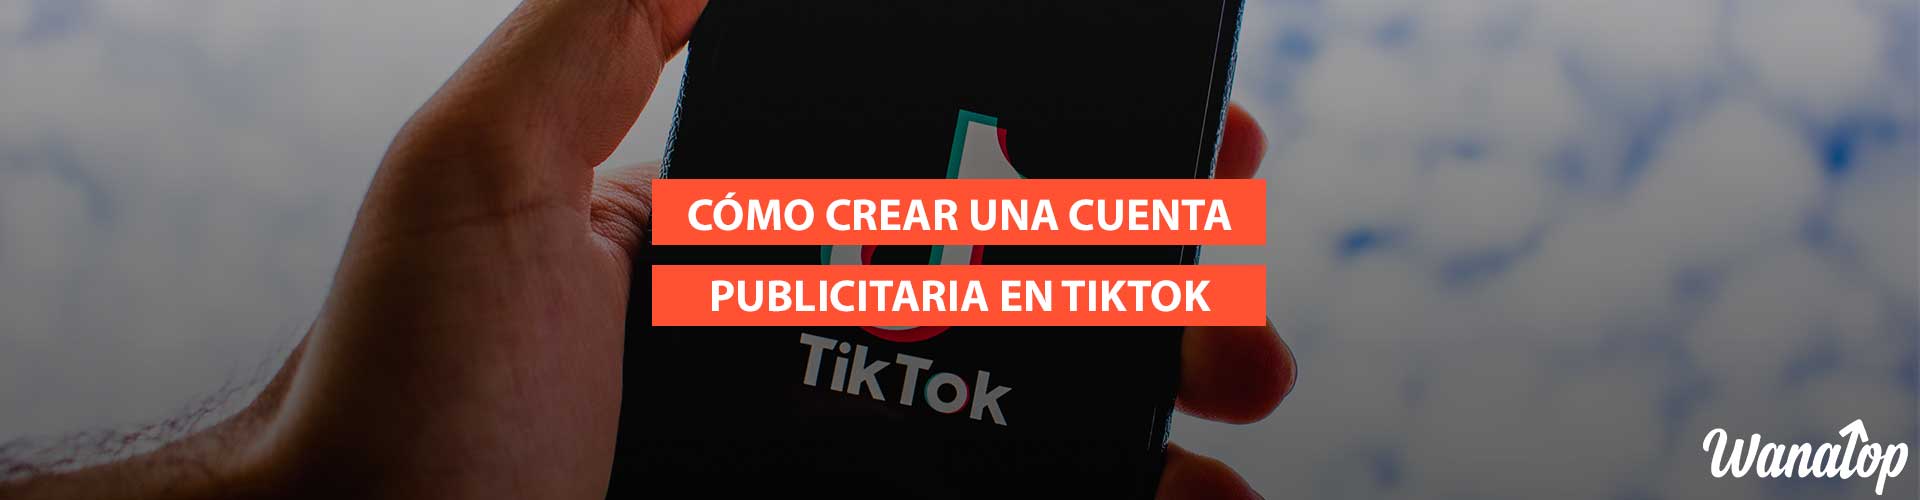 tiktok cuenta publicitaria Cómo crear una cuenta publicitaria en TikTok + Consigue crédito gratis